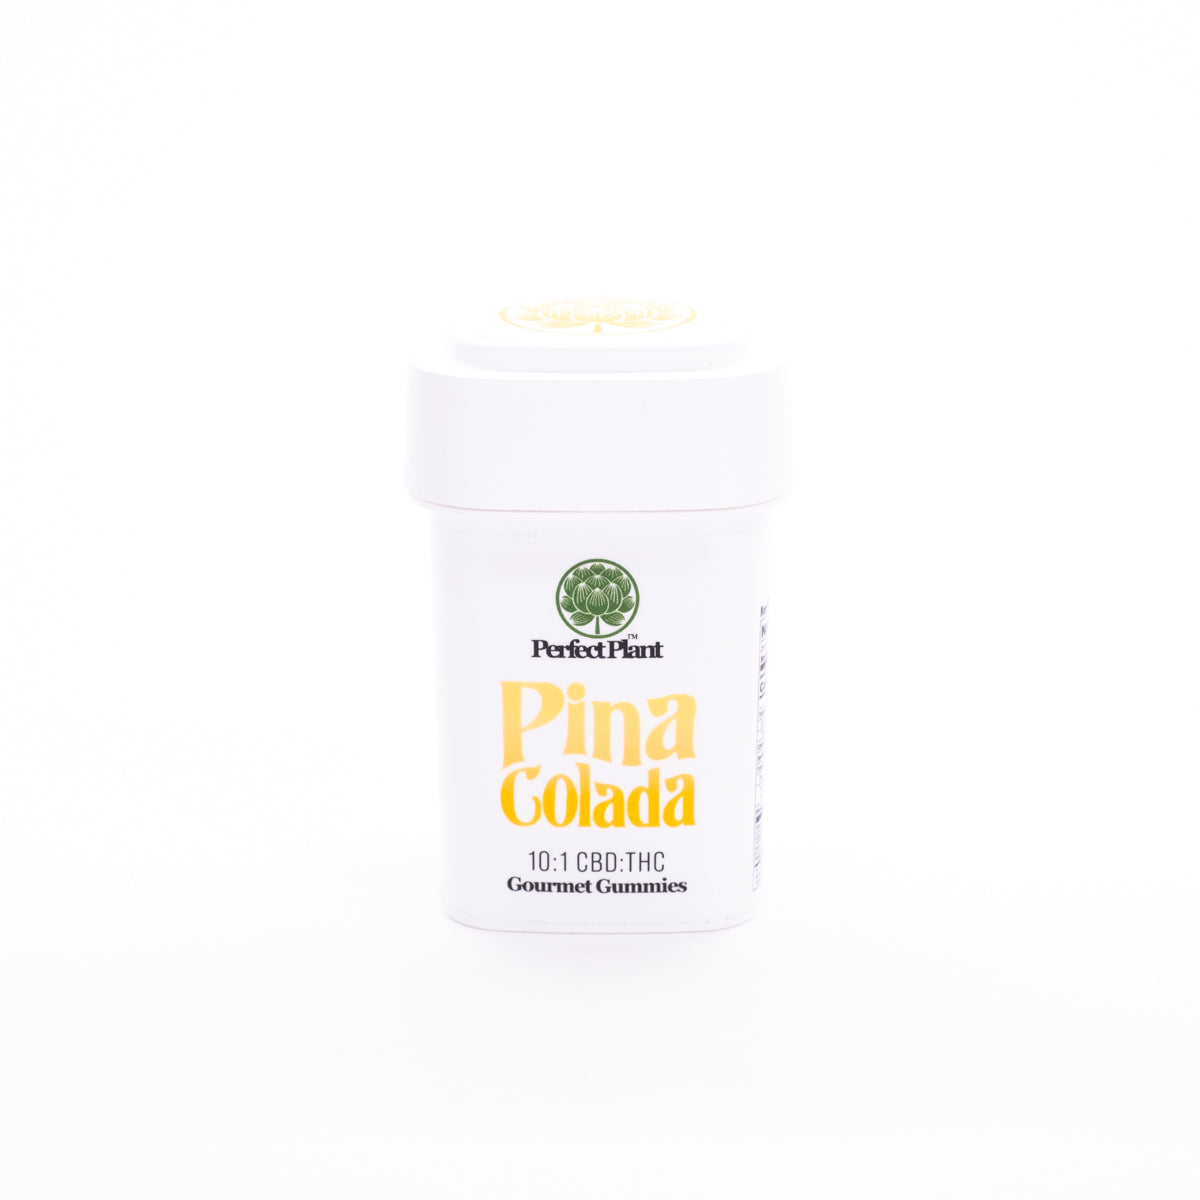 Pina Colada - Delta 9 Gummies (10:1 CBD:THC)